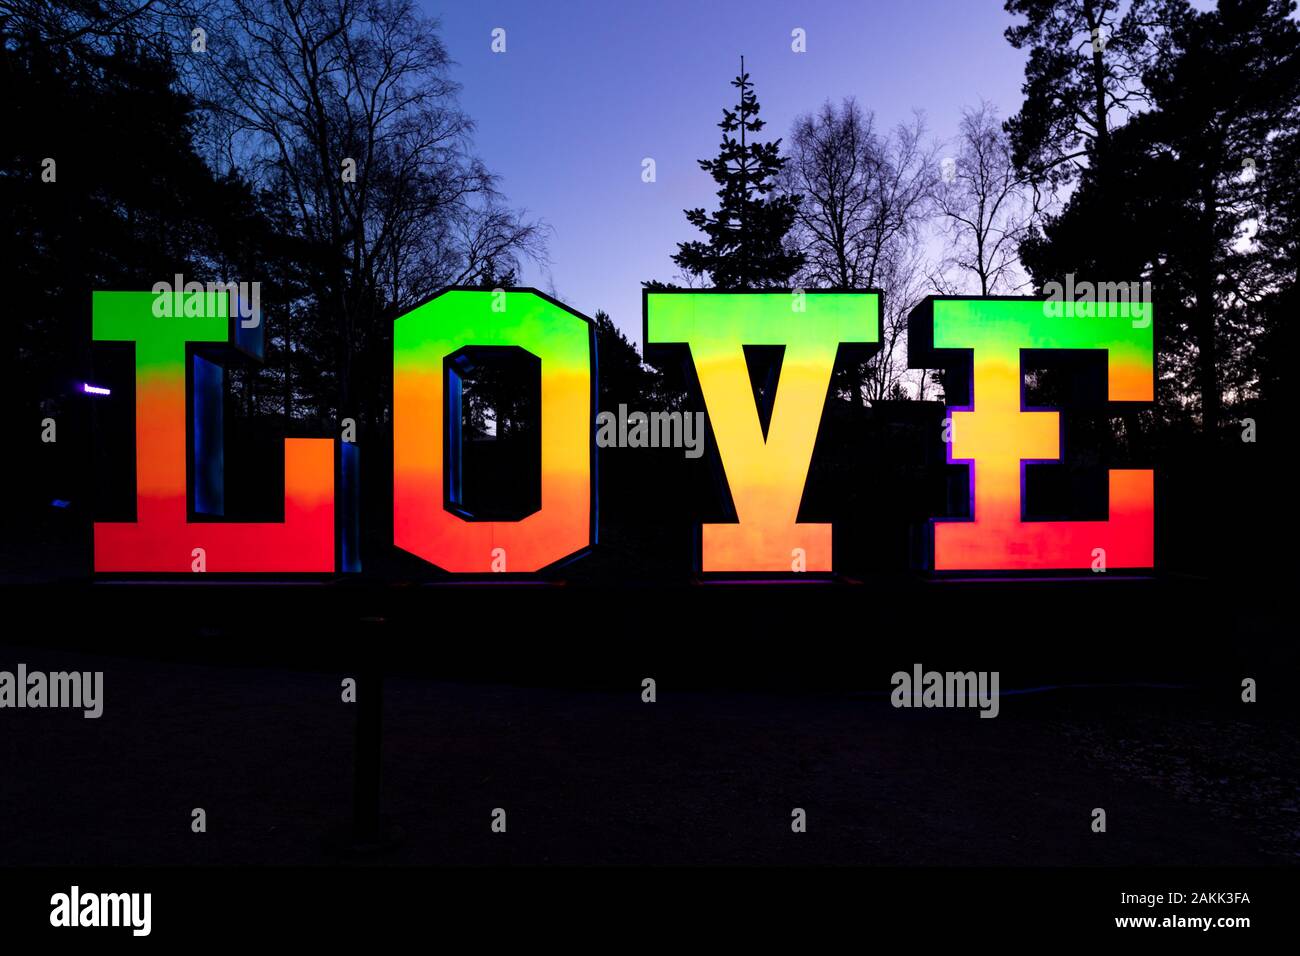 LOVE - a light artwork by Jouni Väänänen at twilight Stock Photo